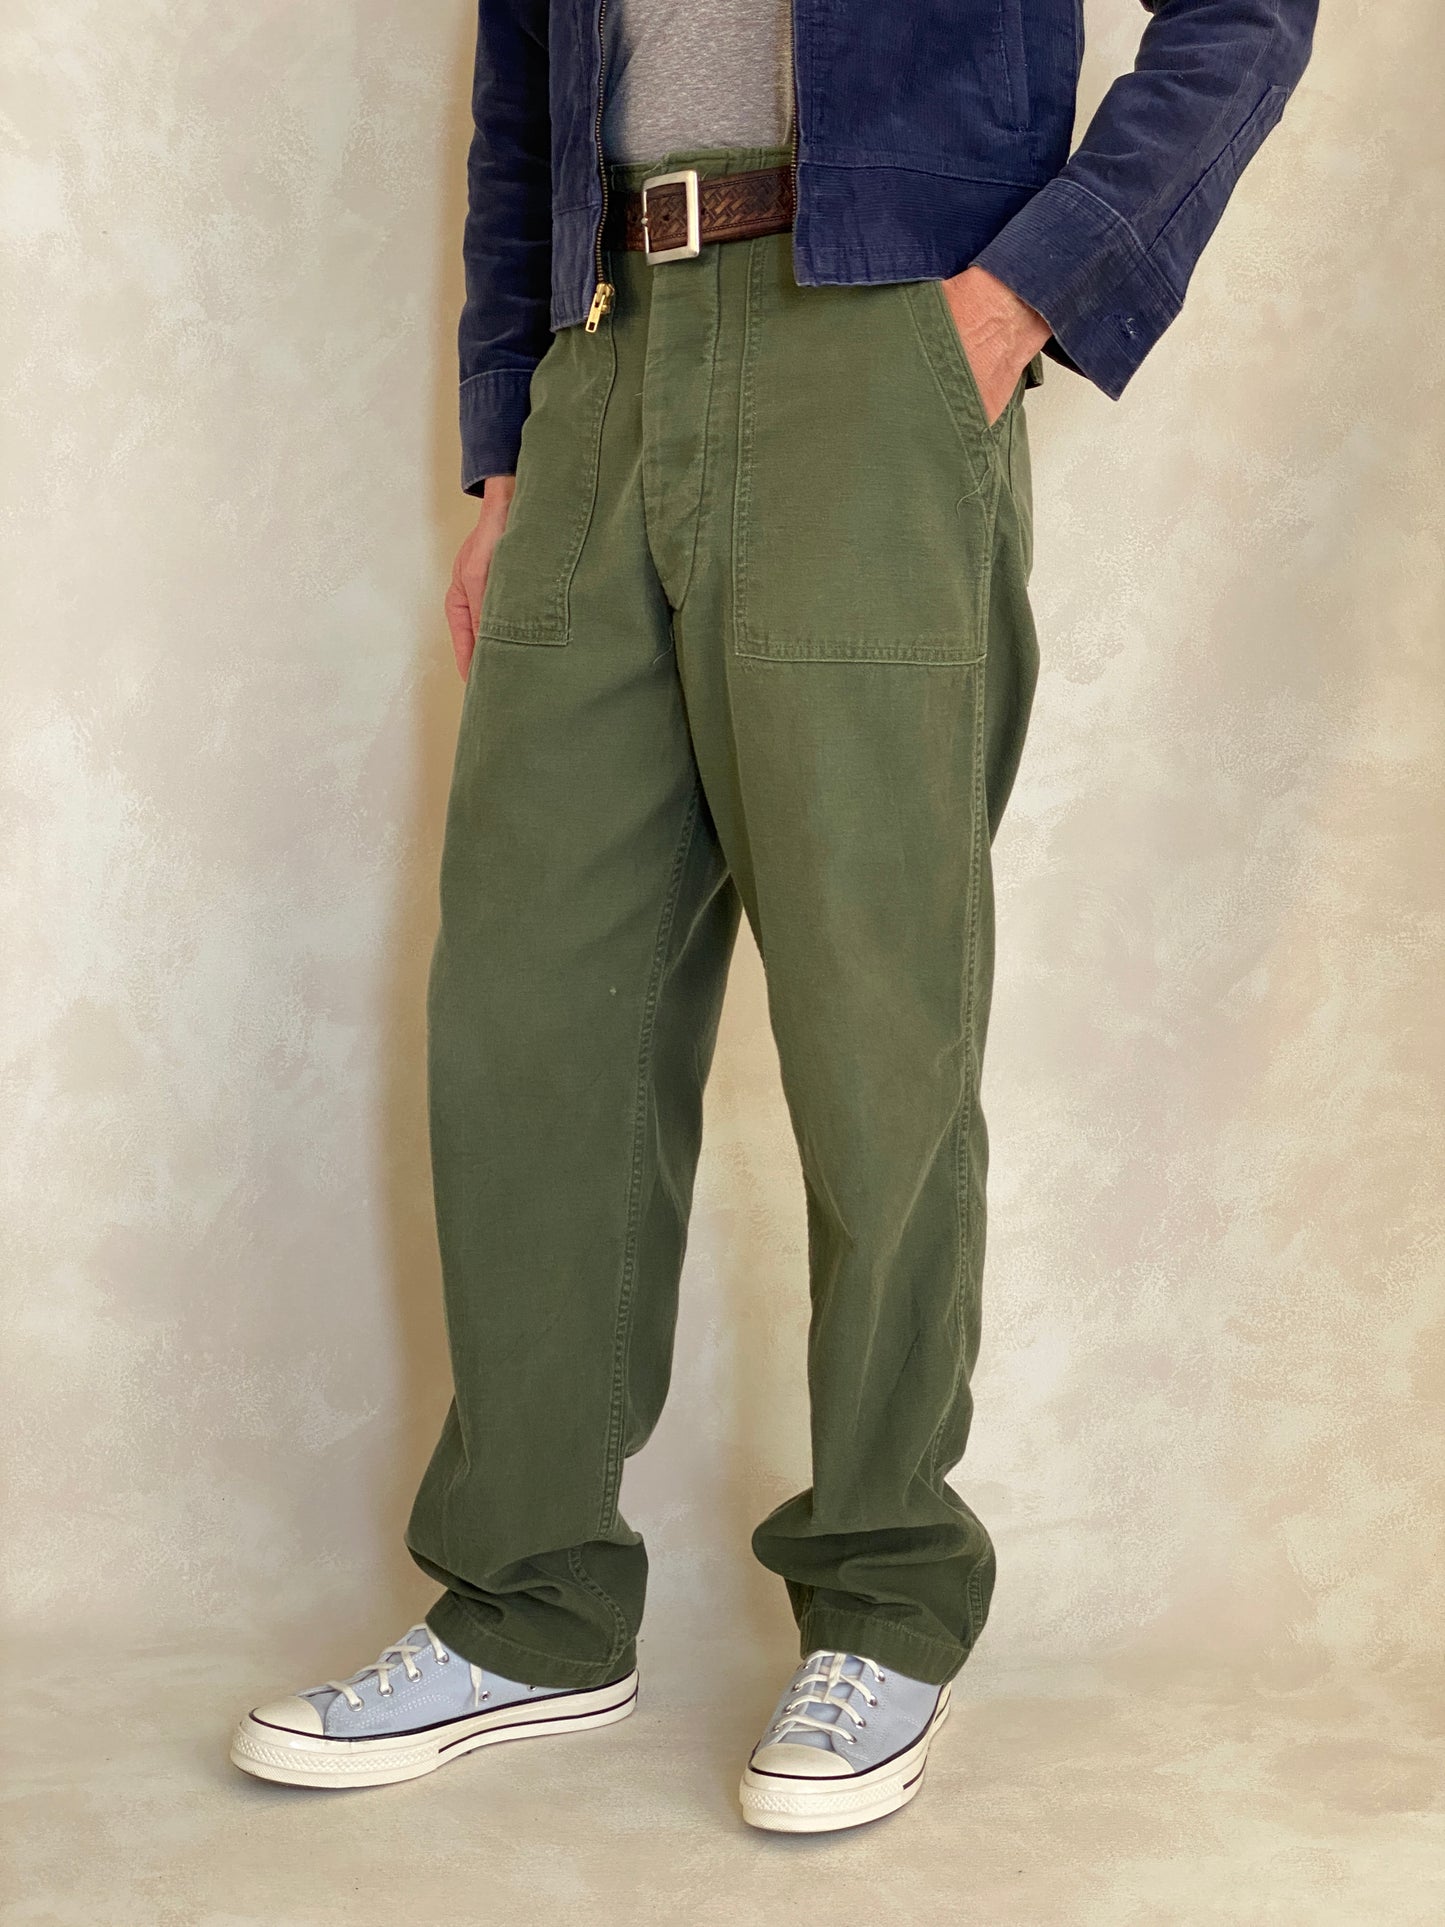 Authentic Vietnam era 1975 US Army fatigue/utility pants, size 31X33.